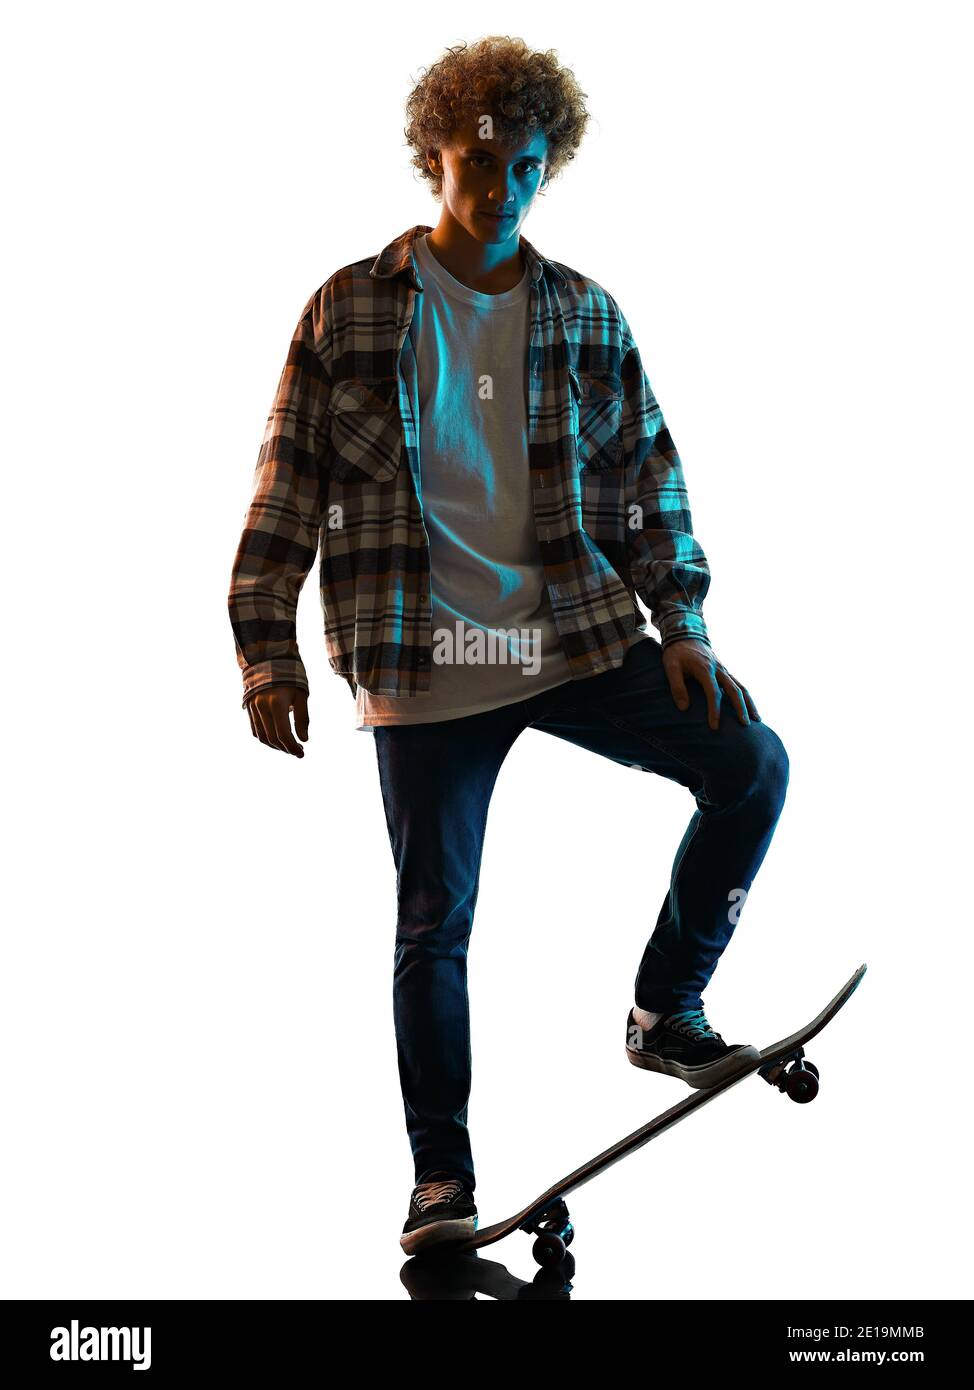 Un jeune homme caucasien skateboarder Skateboarding dans l'ombre de la silhouette de studio isolé sur fond blanc Banque D'Images